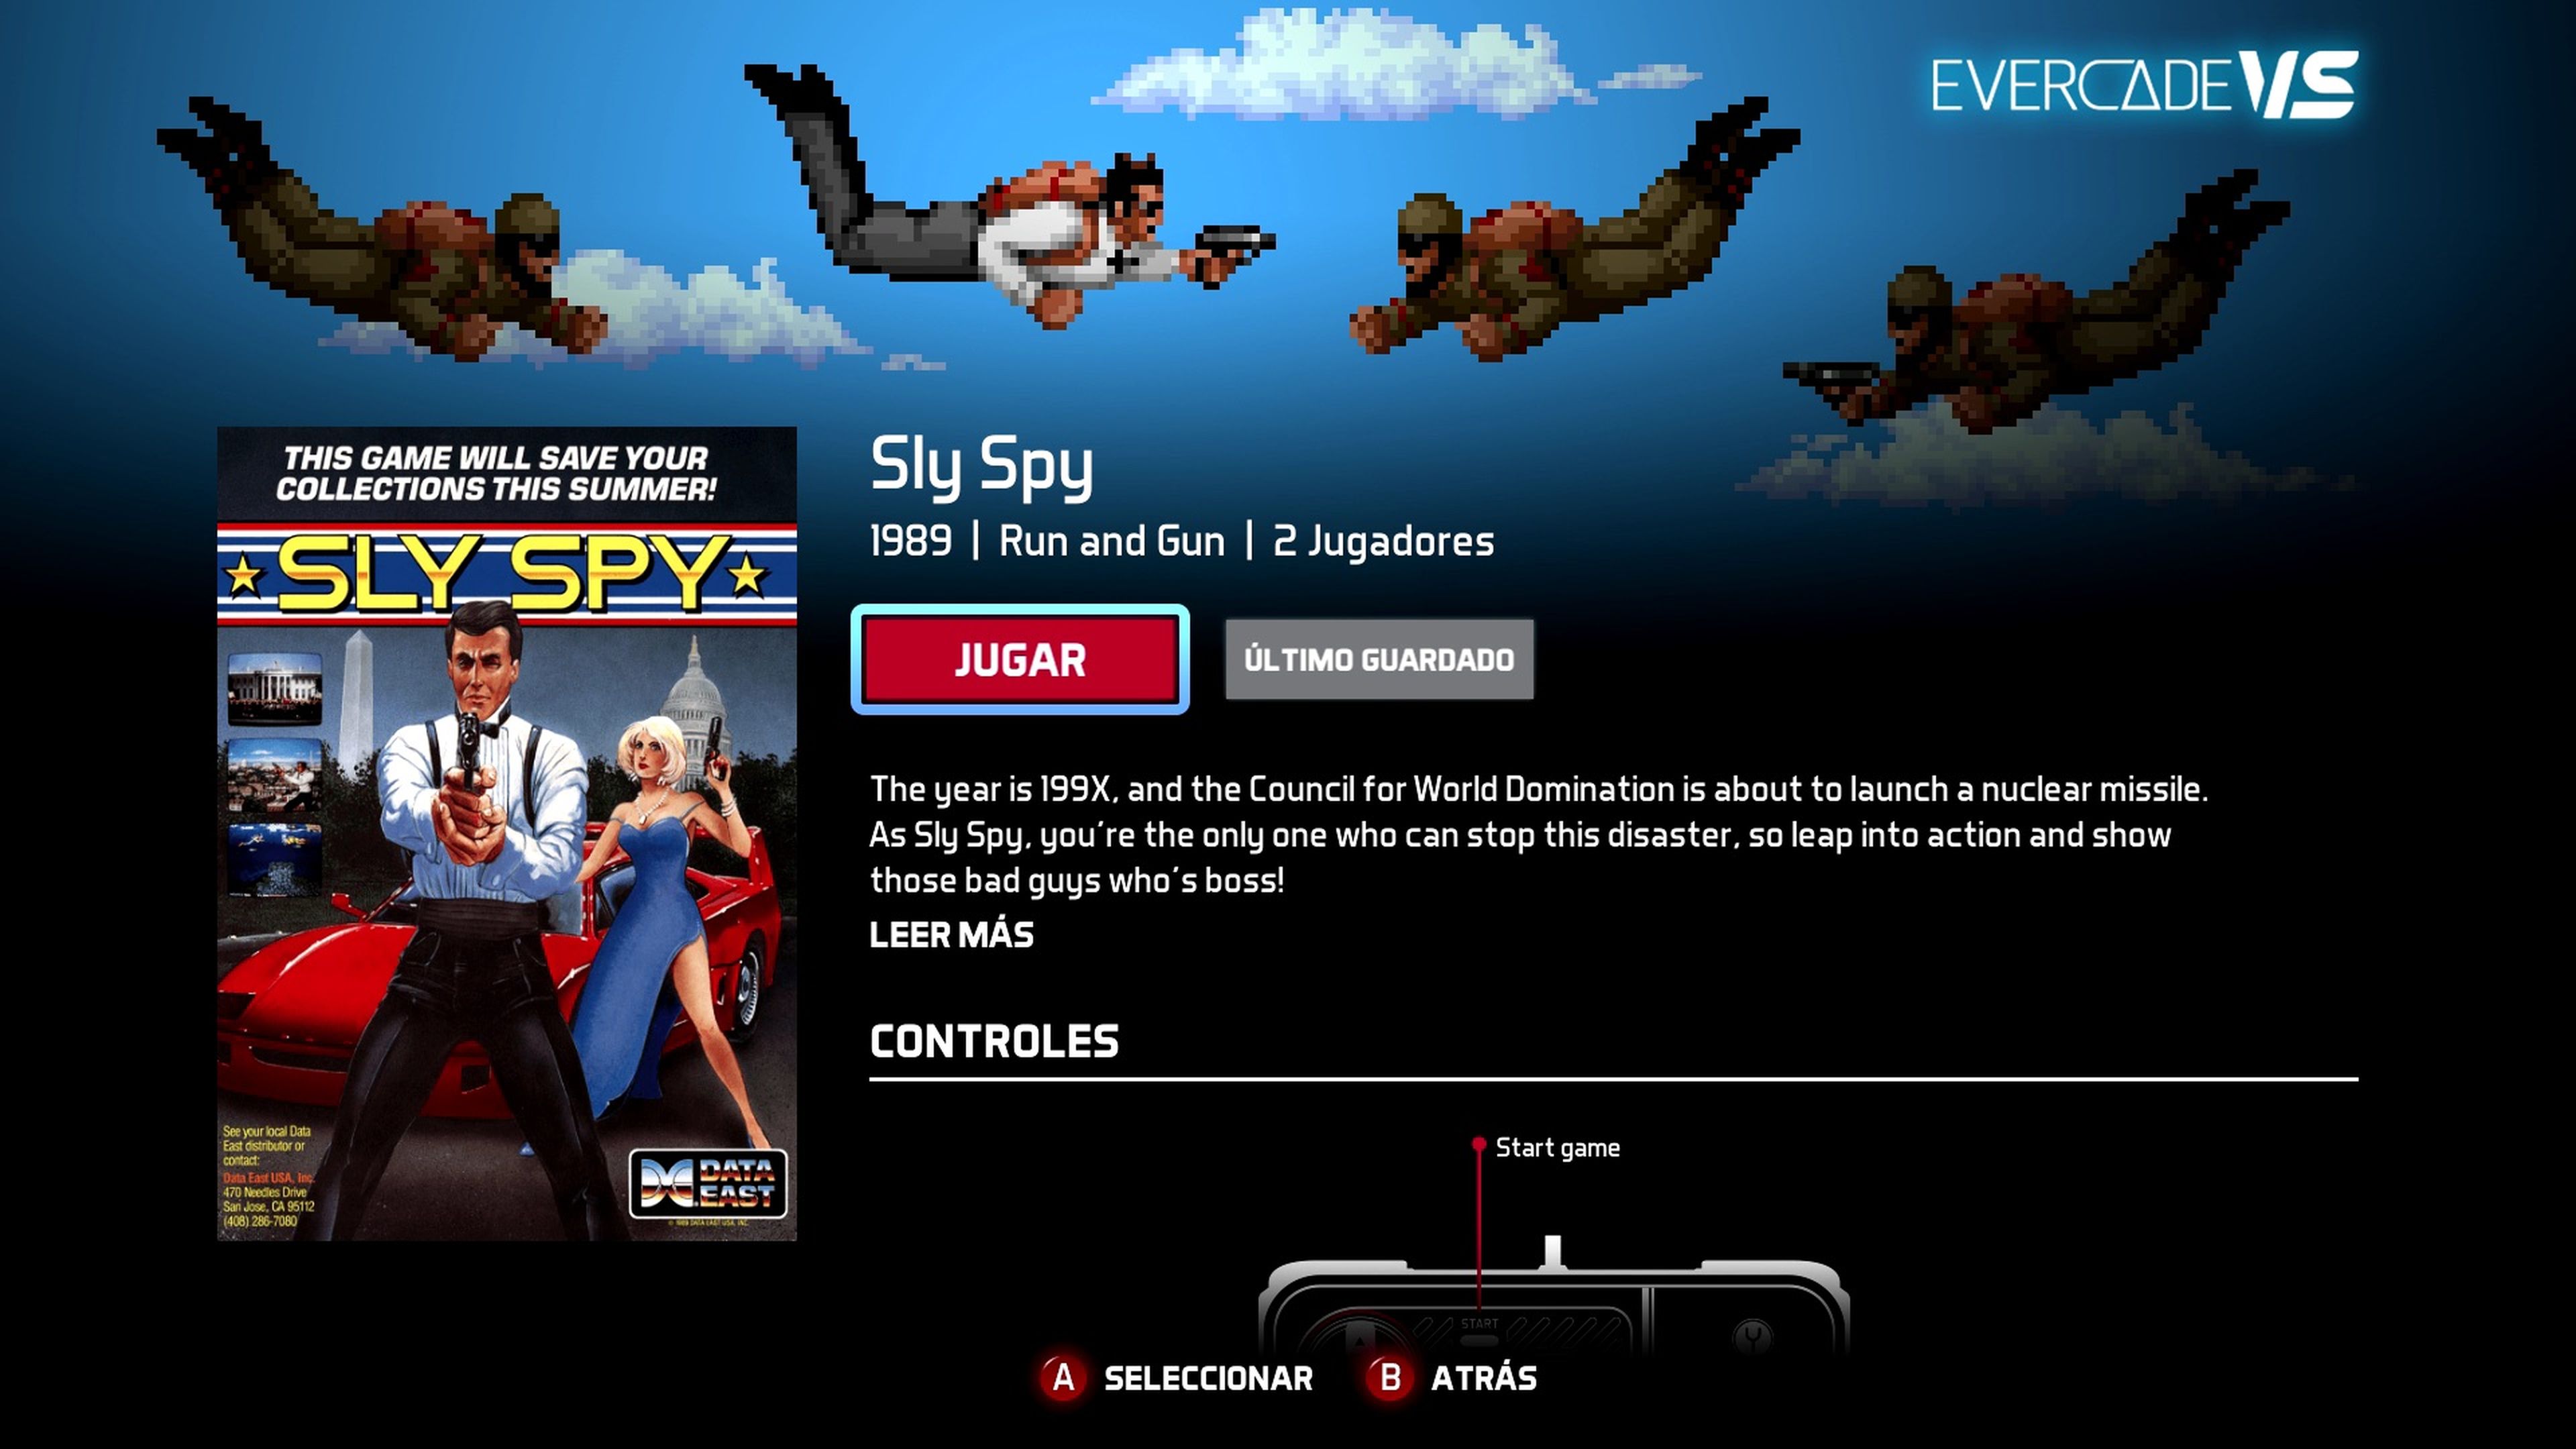 Evercade VS Sly Spy